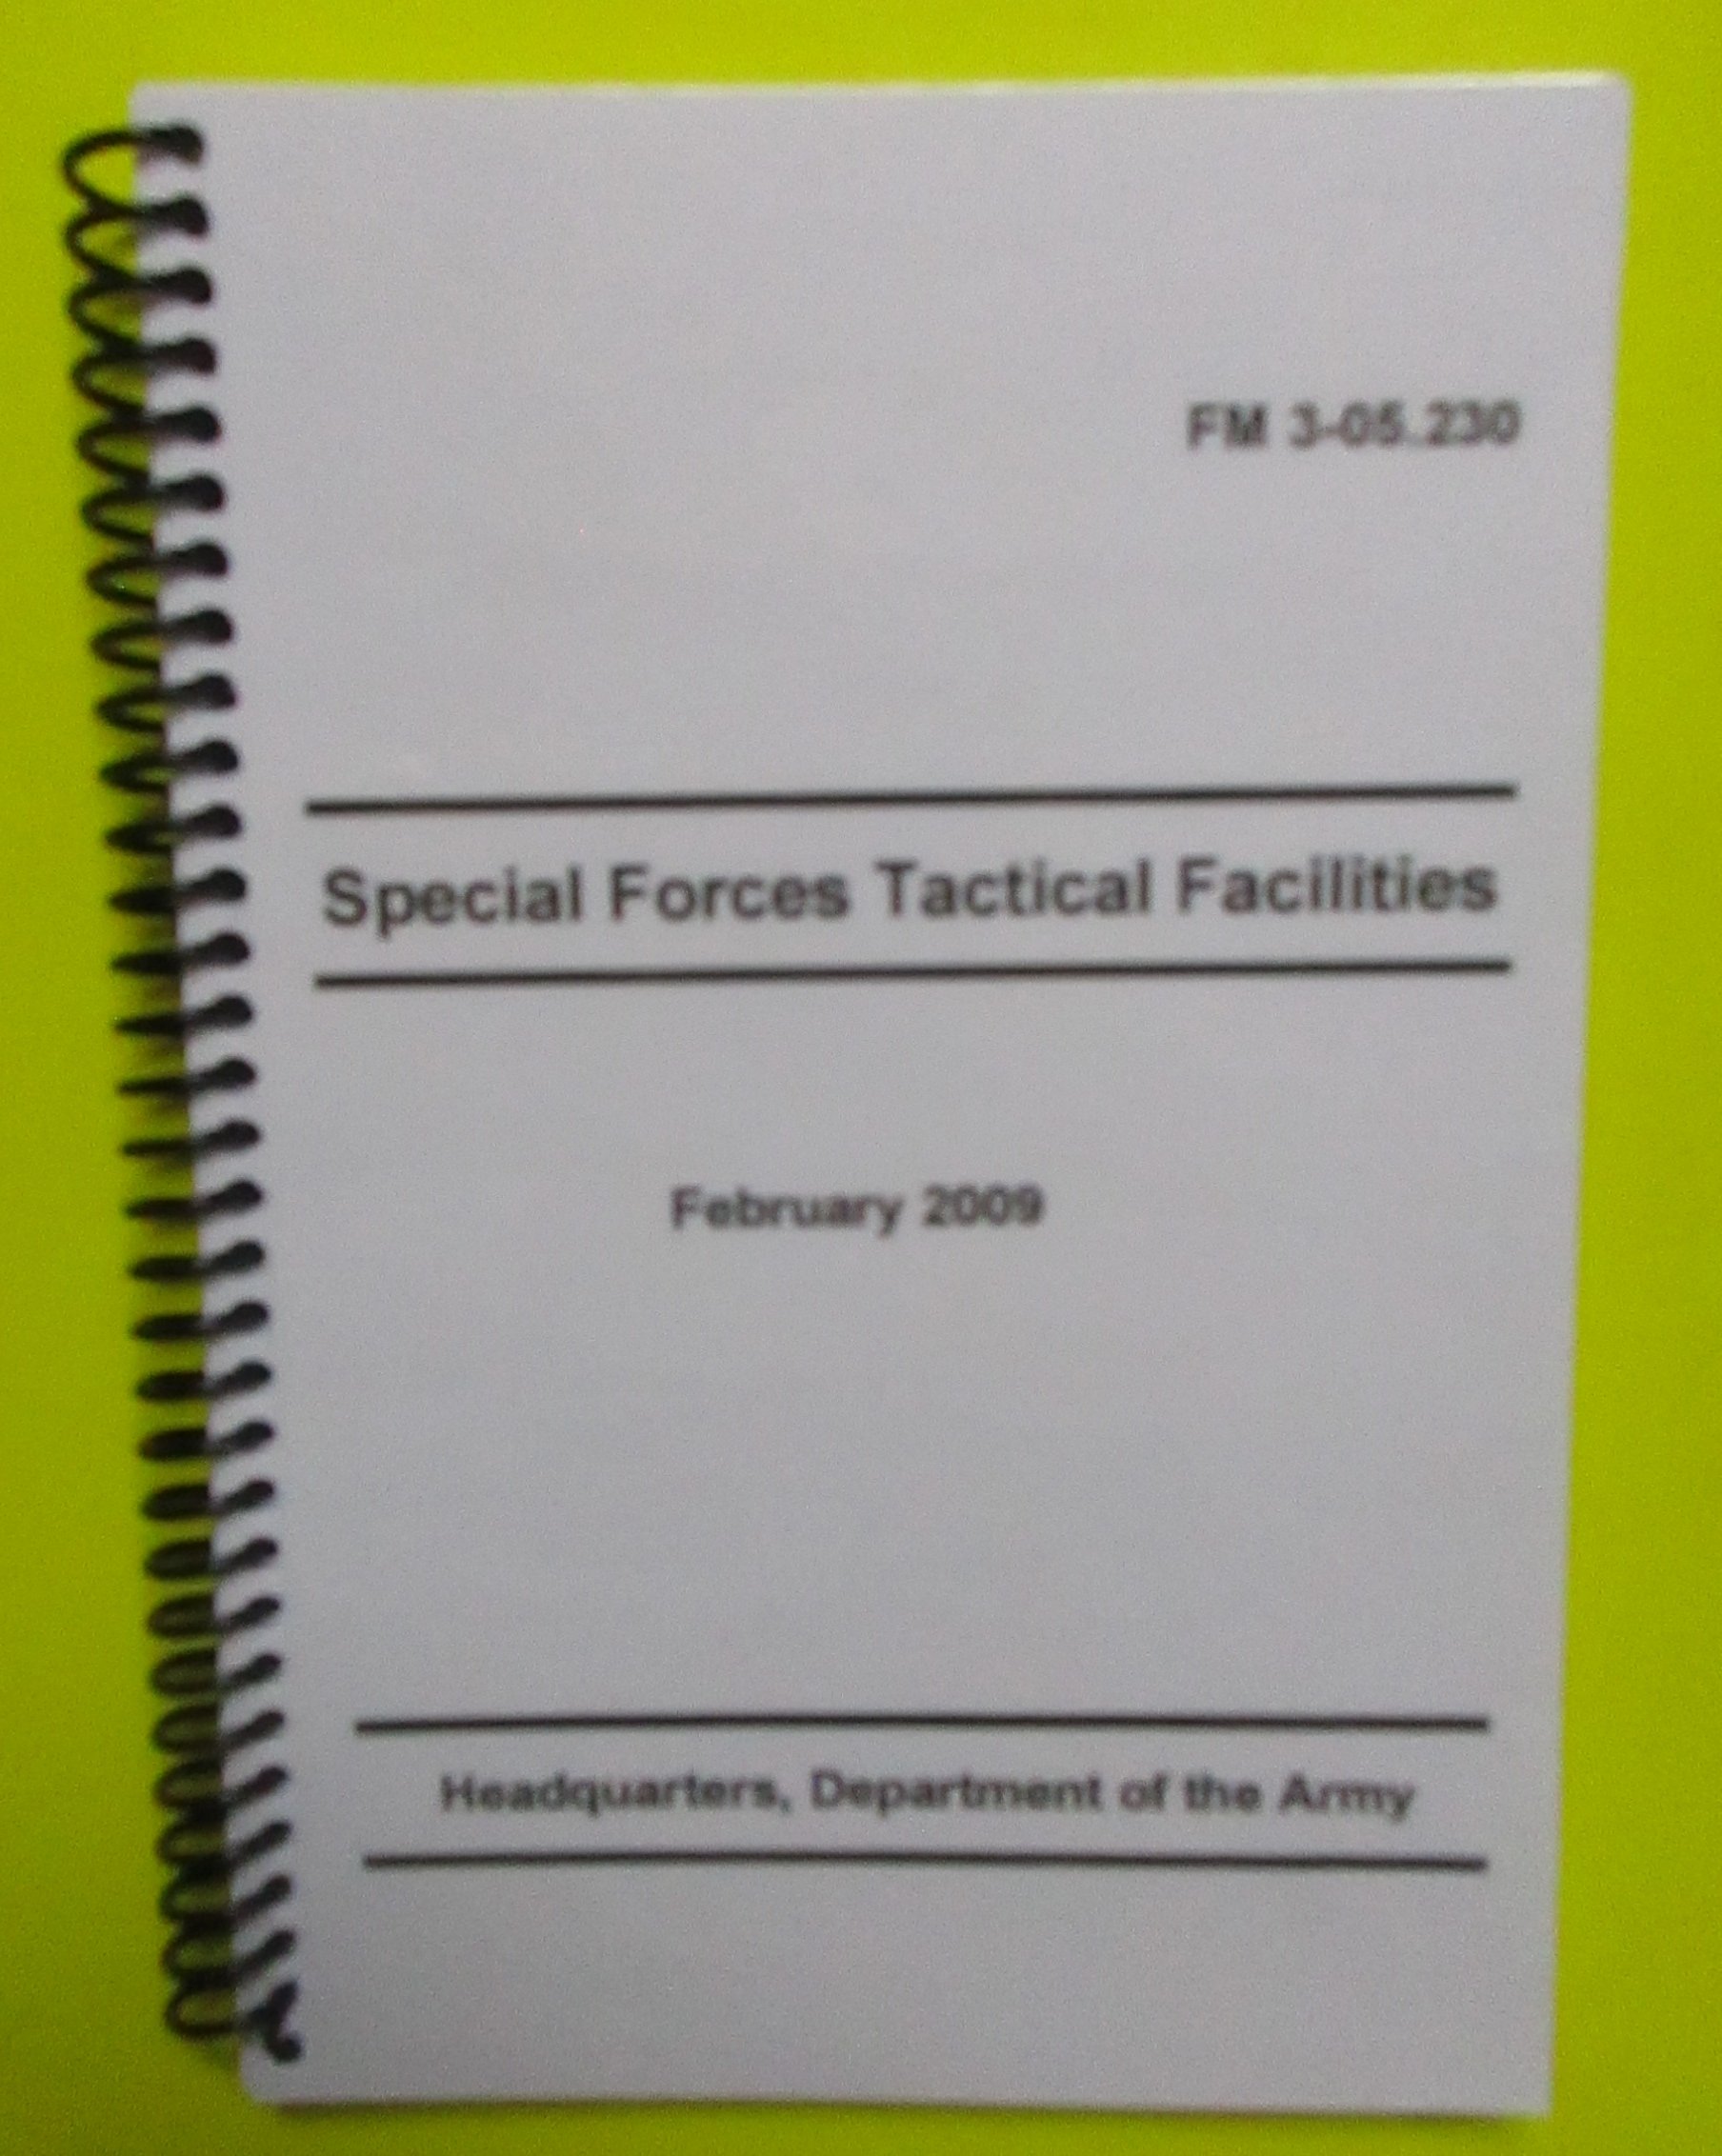 FM 3-05.230 SF Tactical Facilities - 2009 - BIG size